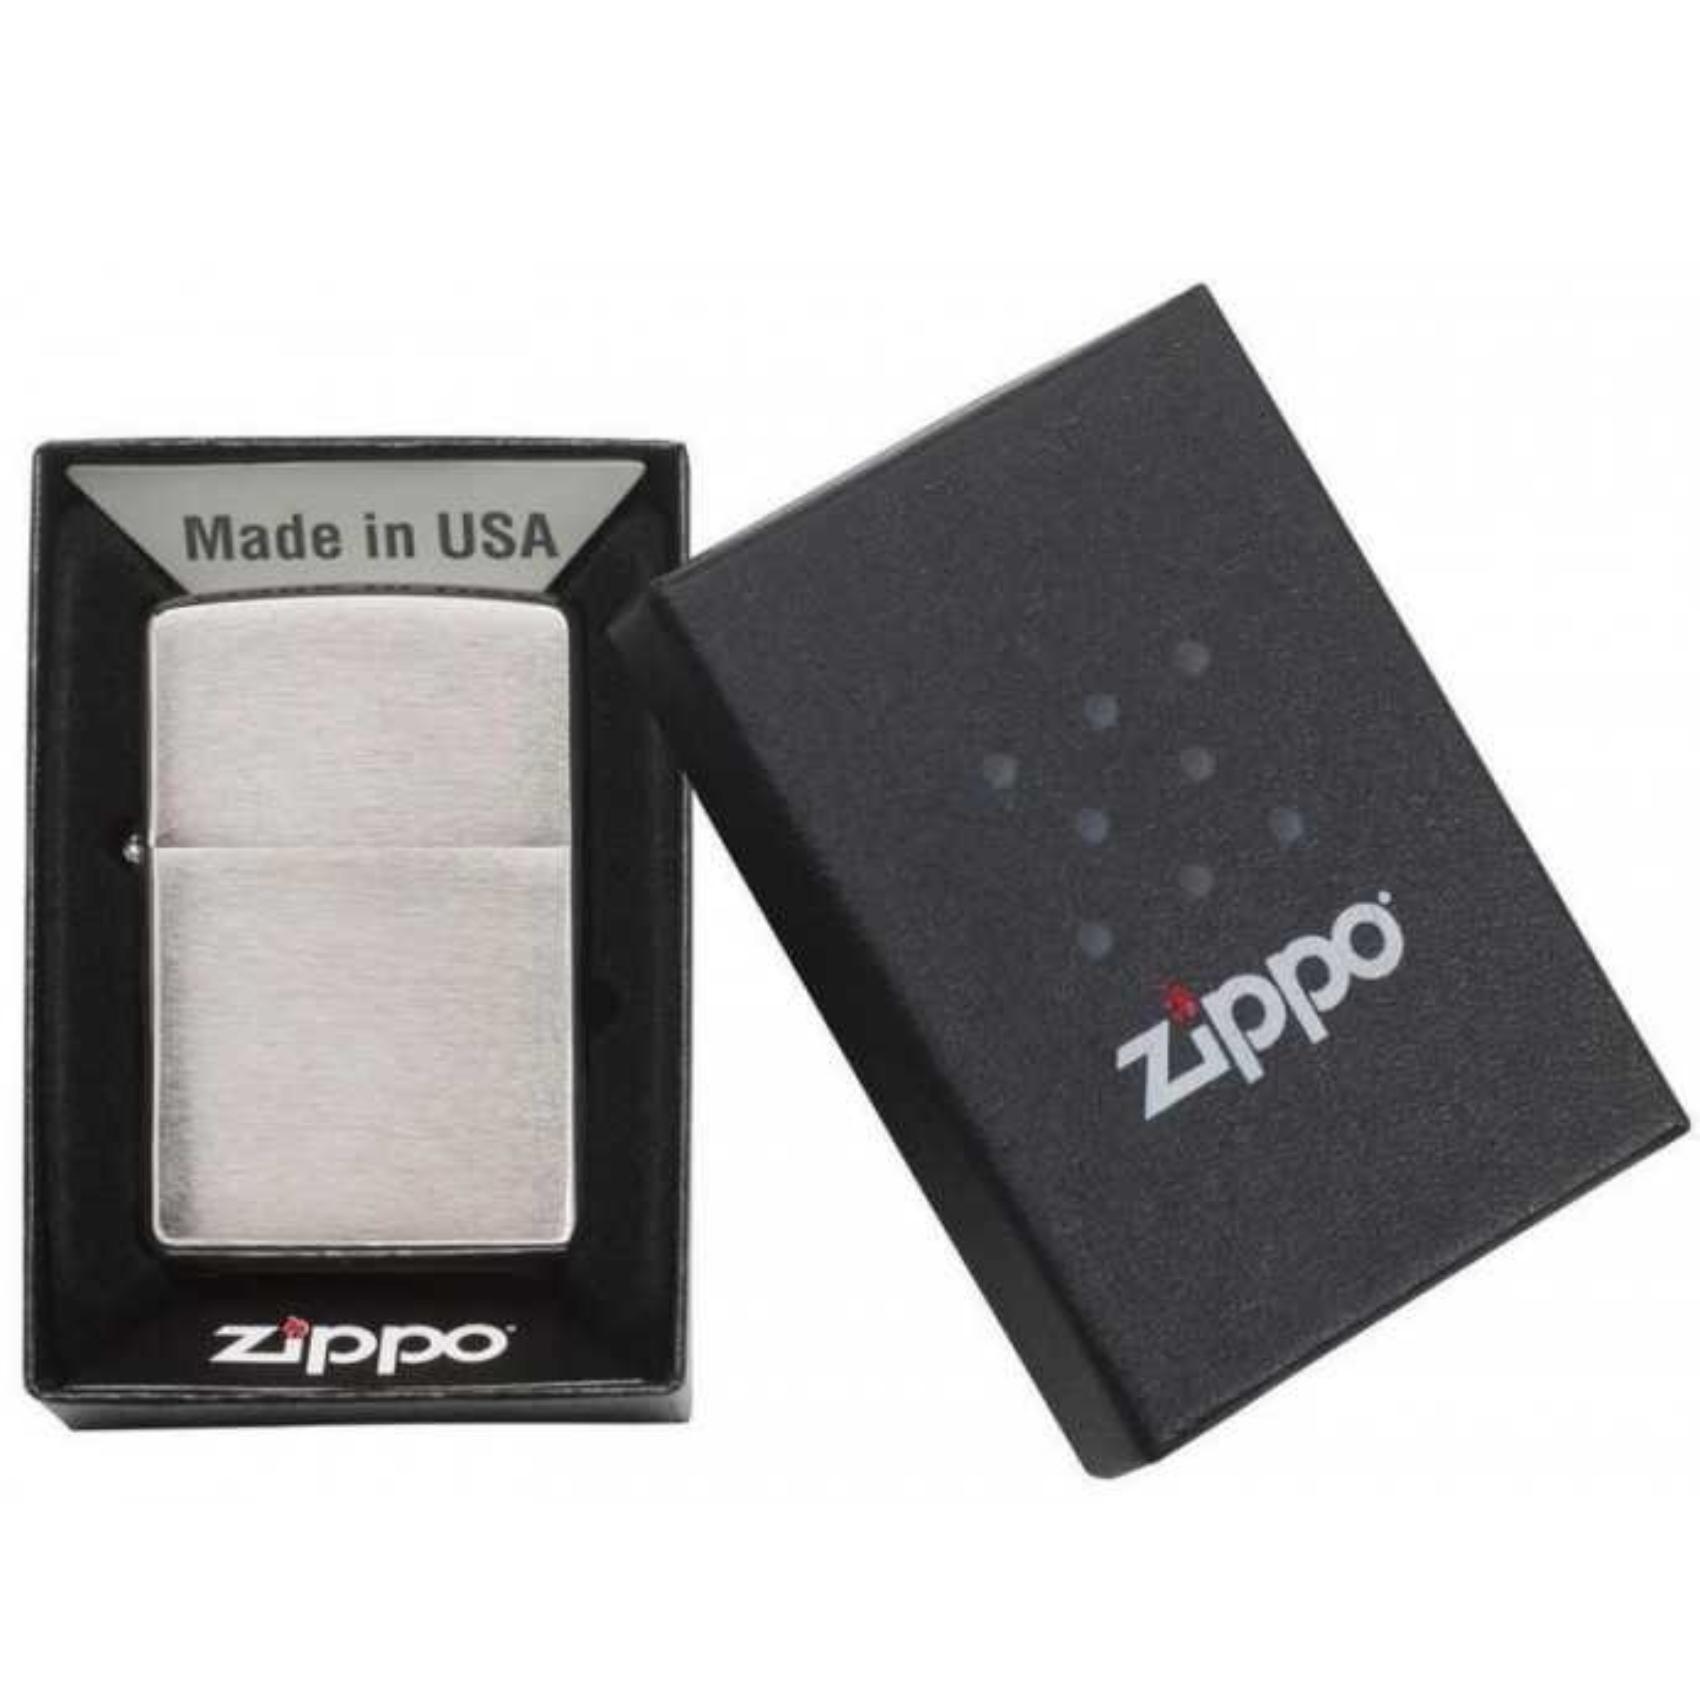 Αντιανεμικός αναπτήρας Zippo Street Chrome Matte 200 σε ασημί χρώμα με ματ υφή και δυνατότητα χαράγματος για ένα προσωποποιημένο δώρο.